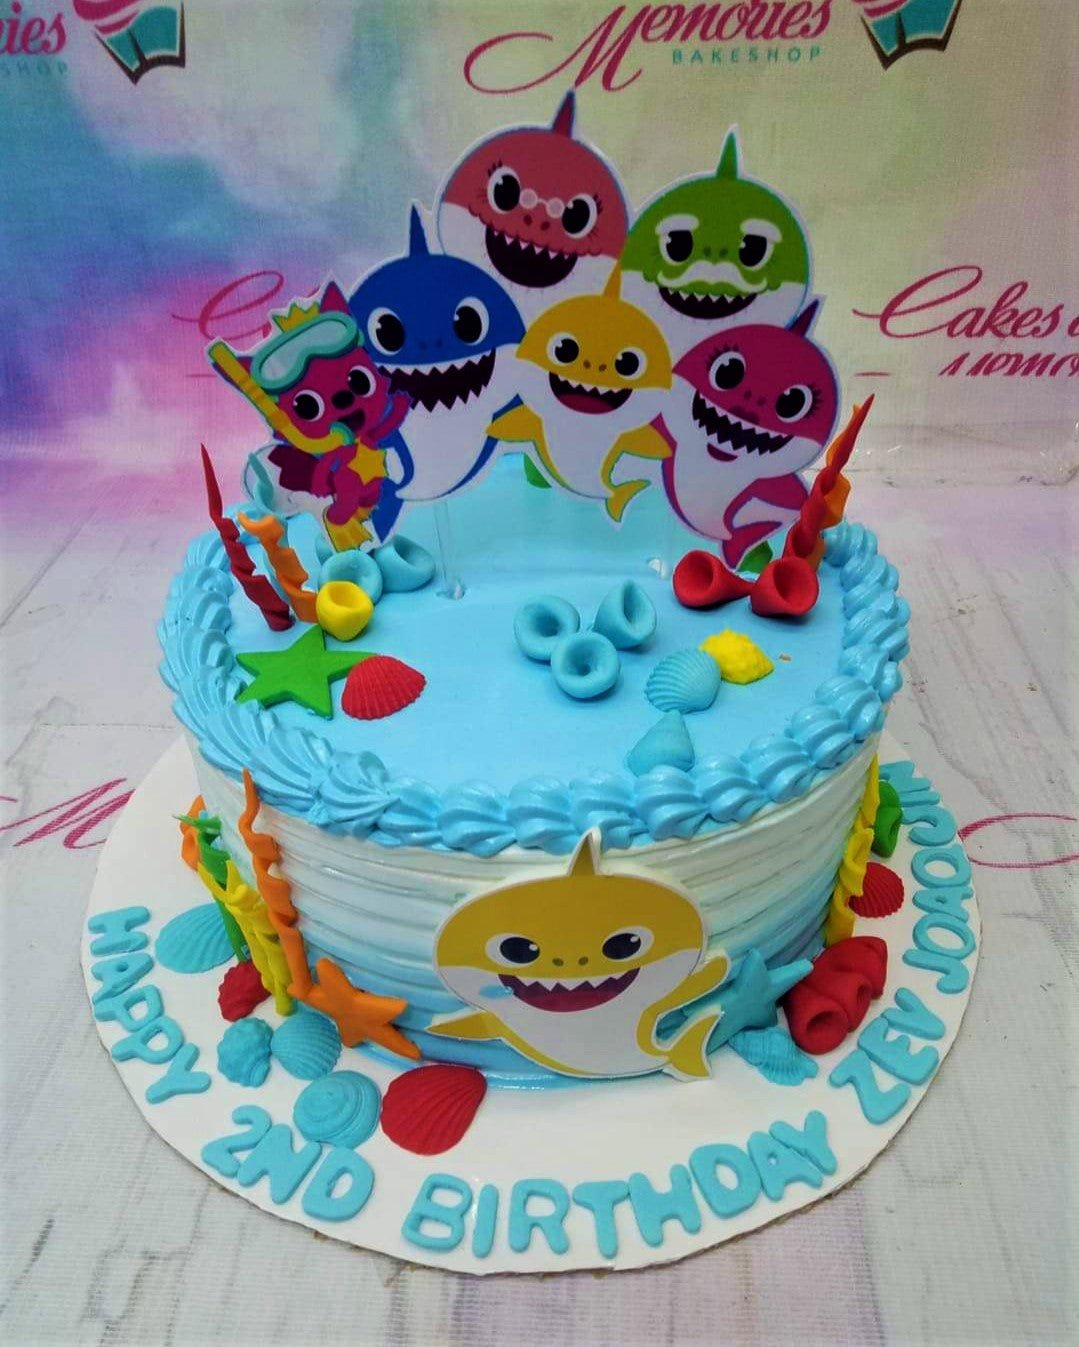 Baby Shark Birthday Cake Tutorial - YouTube